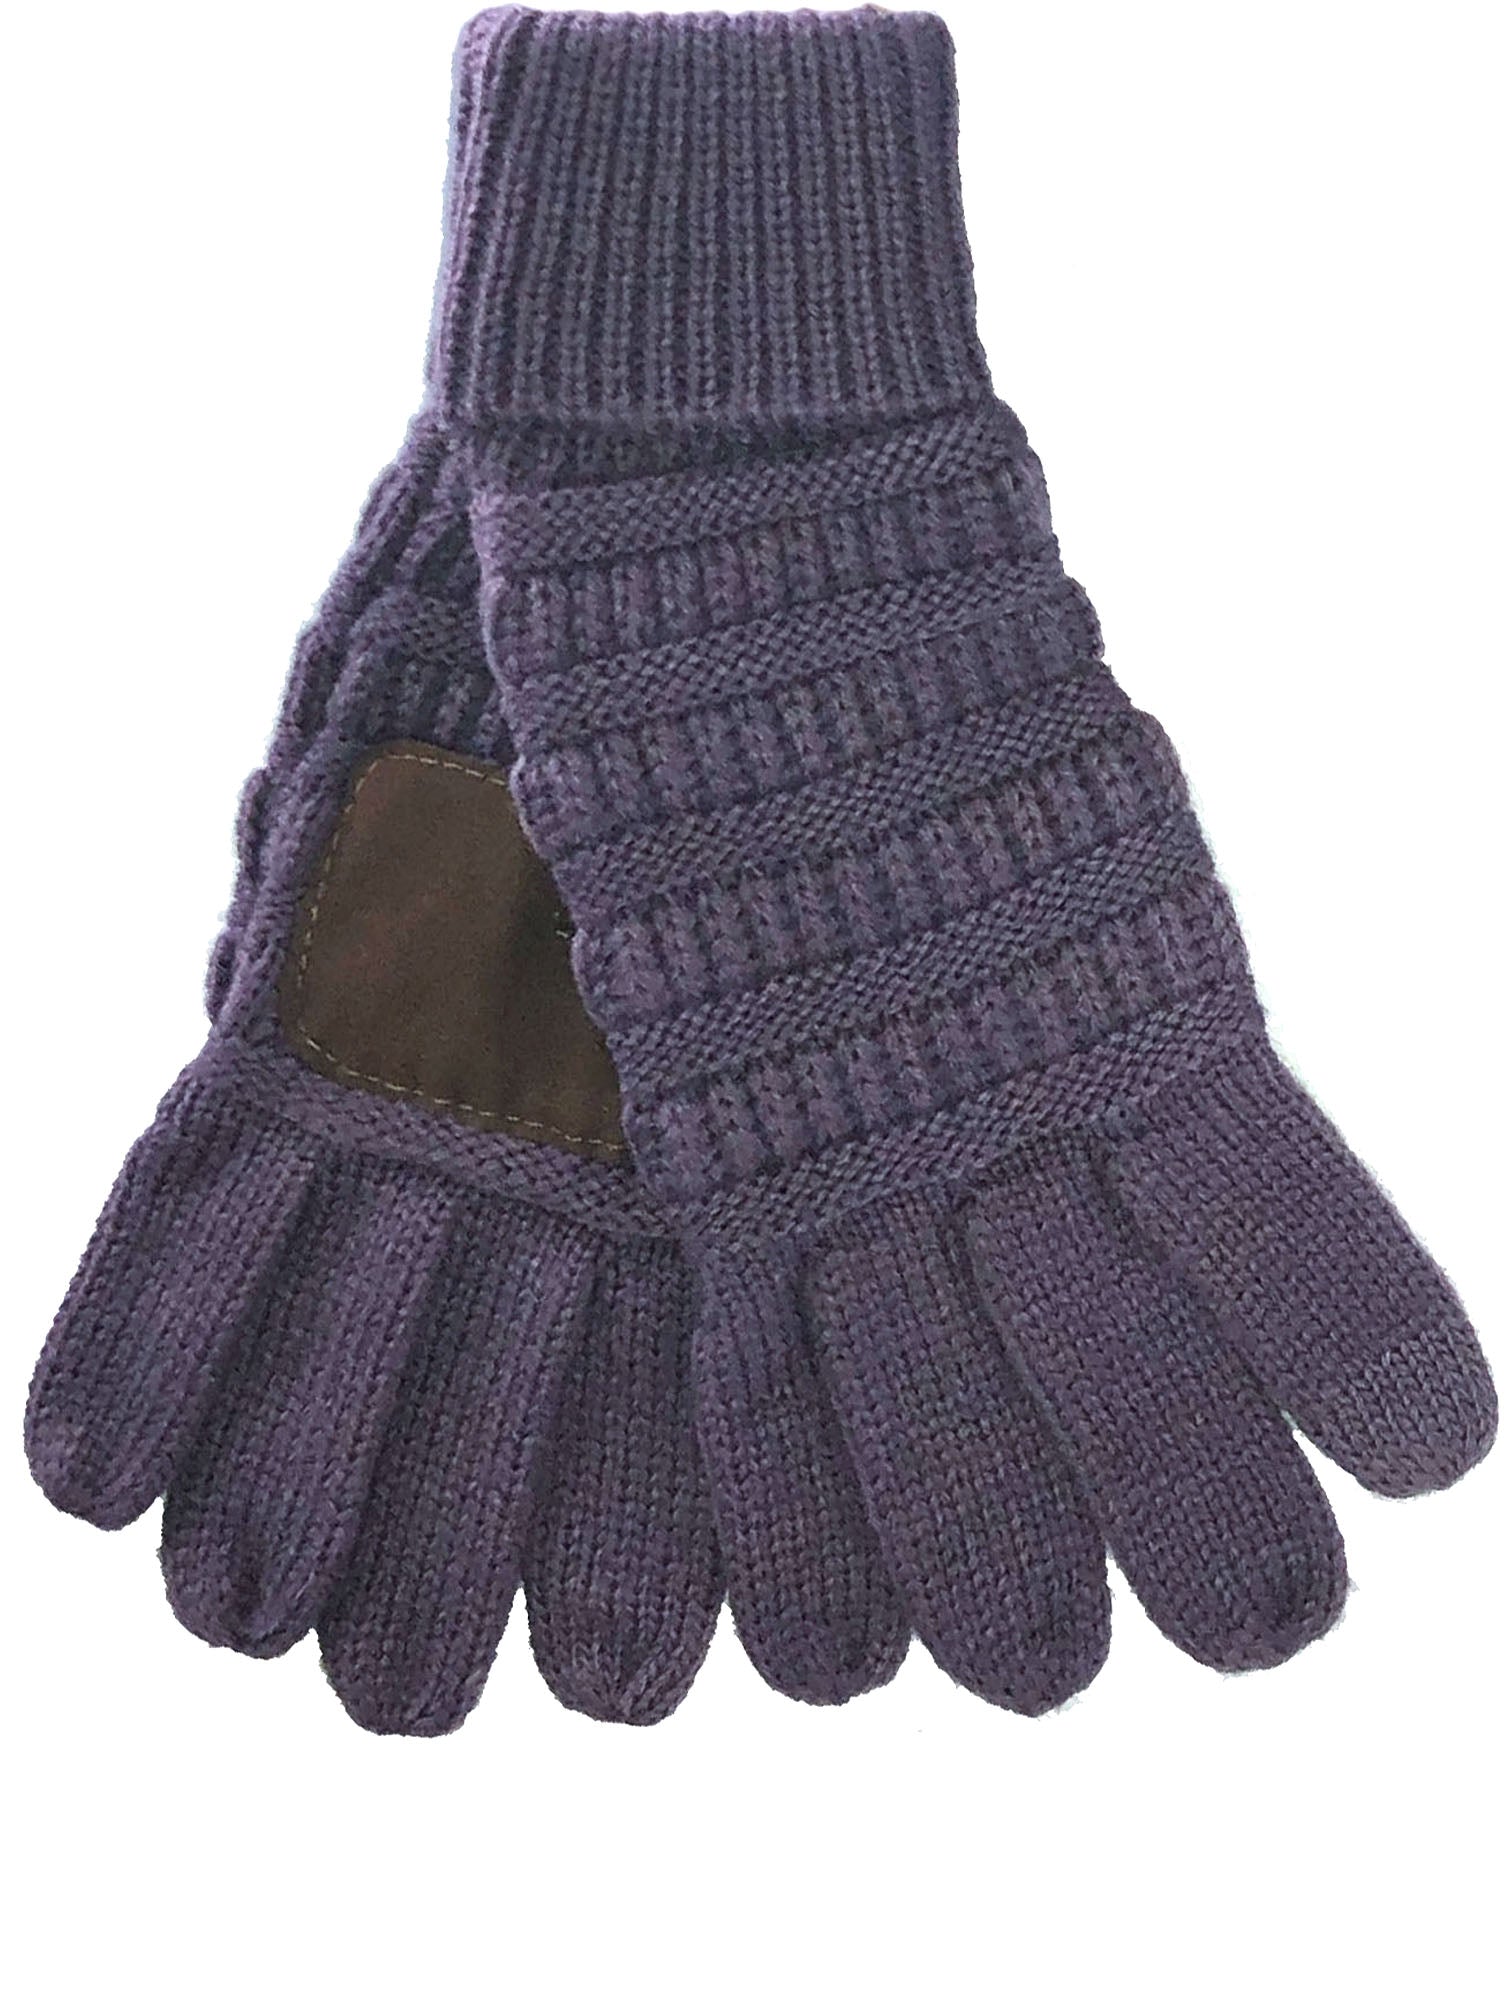 G-20 C.C Violet Gloves